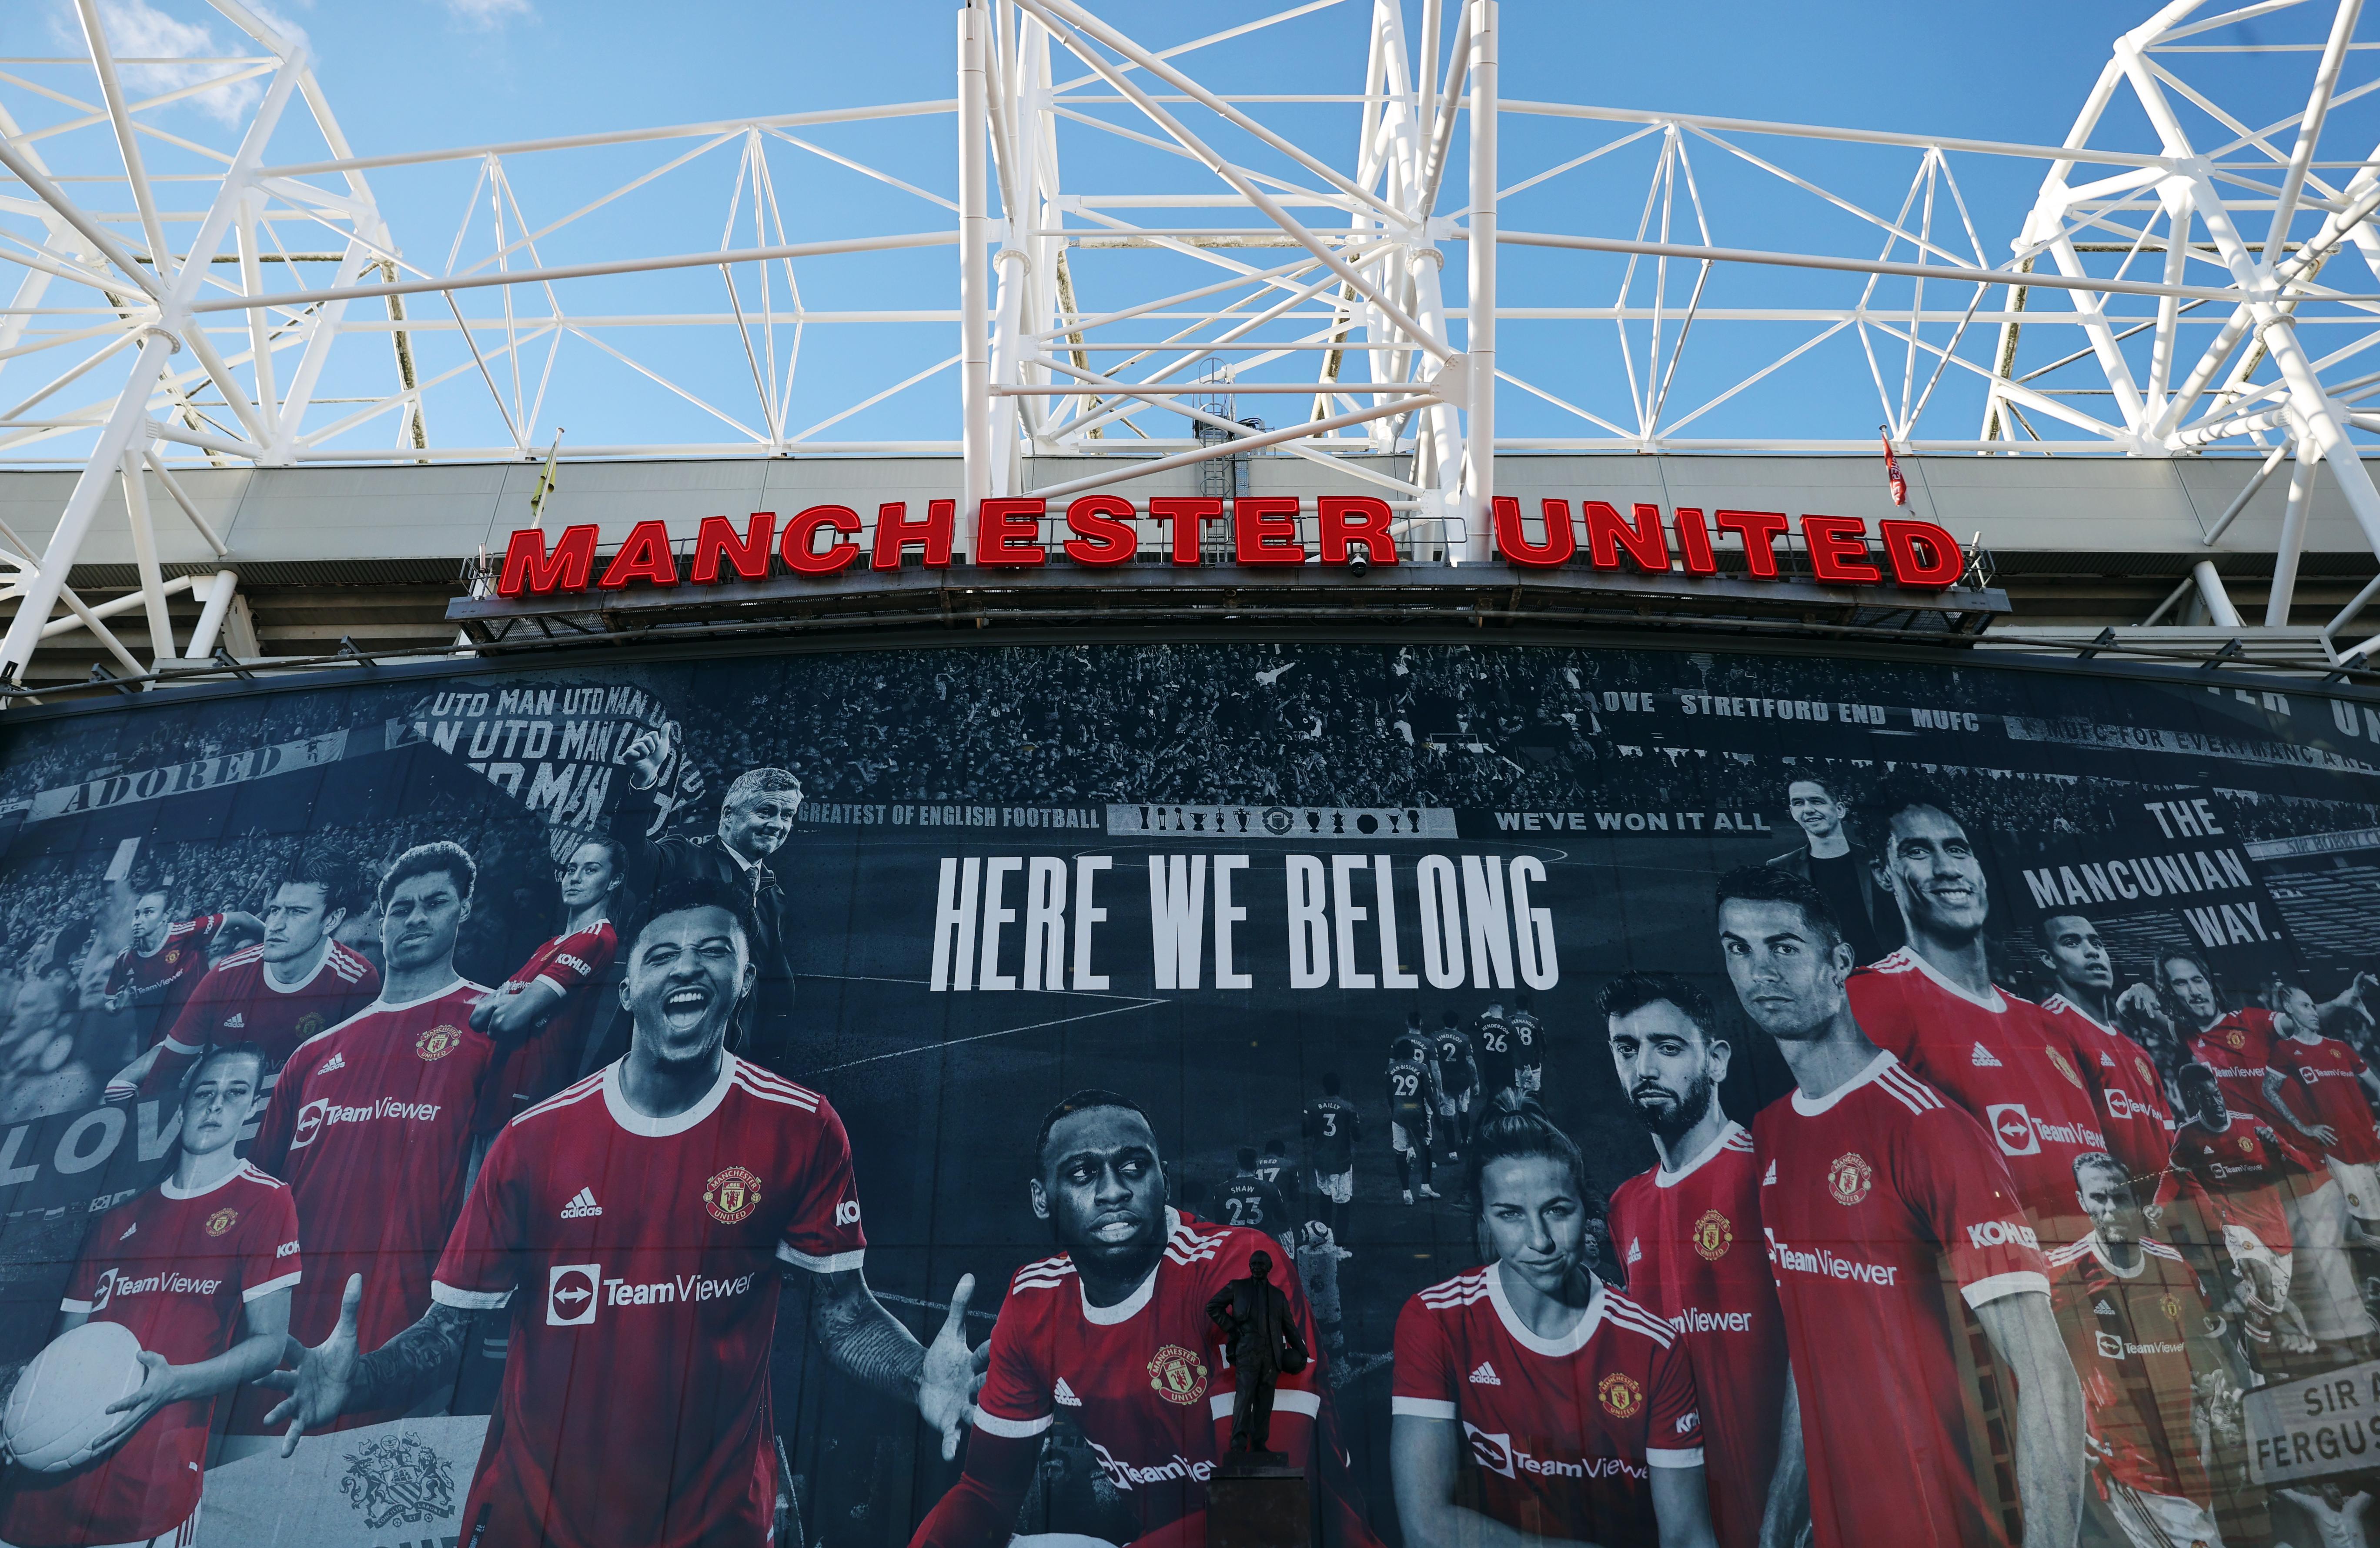 Hãy tải ngay hình nền điện thoại của Manchester United để cảm nhận sức mạnh và tinh thần chiến đấu của một đội bóng huyền thoại. Hình ảnh sân Old Trafford, áo đấu đỏ thắm, và tuyệt chiêu của các cầu thủ, sẽ làm cho màn hình của bạn thêm phần sống động và rực rỡ hơn bao giờ hết.